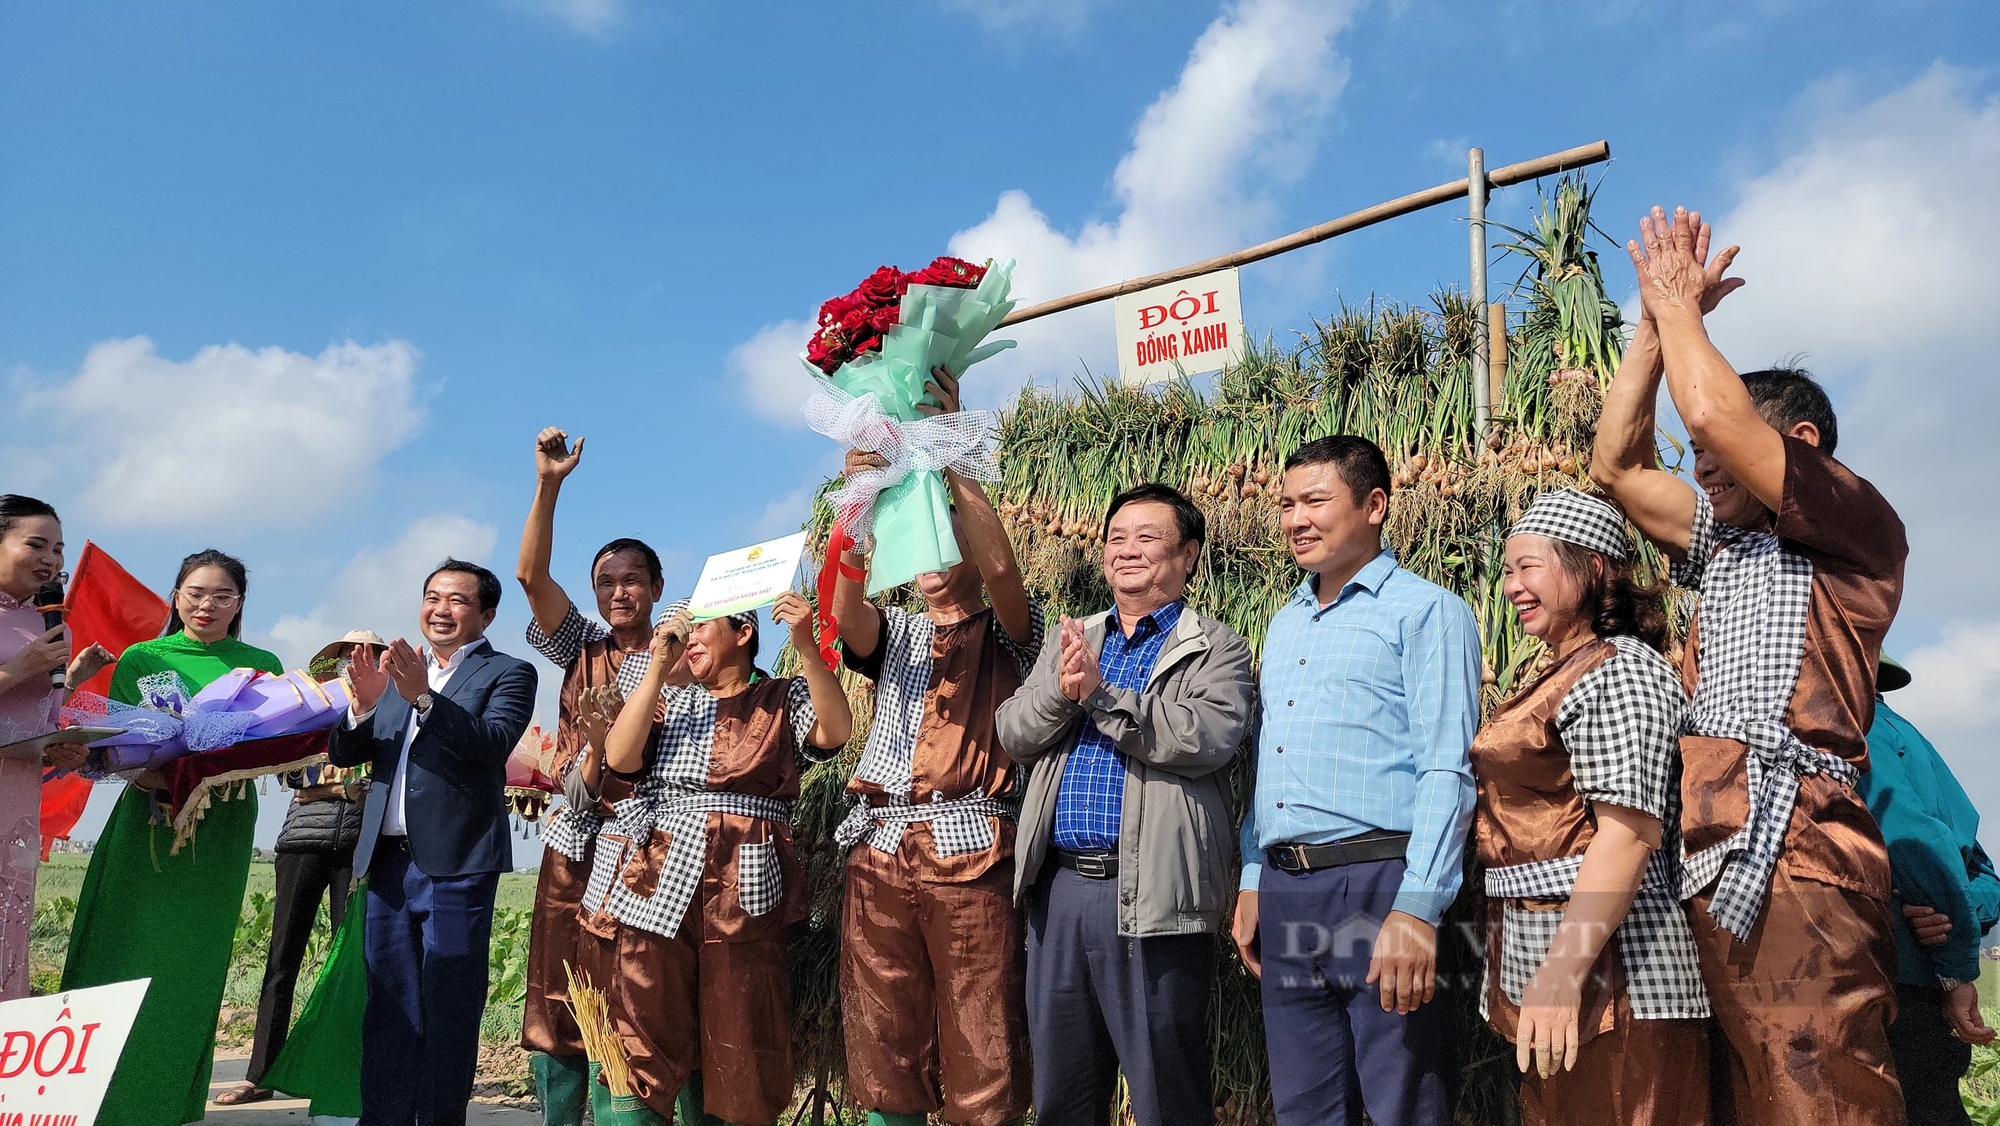 Bộ trưởng Lê Minh Hoan, Bí thư Tỉnh ủy Hải Dương Trần Đức Thắng xuống đồng cổ vũ nông dân thi nhổ hành, tỏi- Ảnh 17.